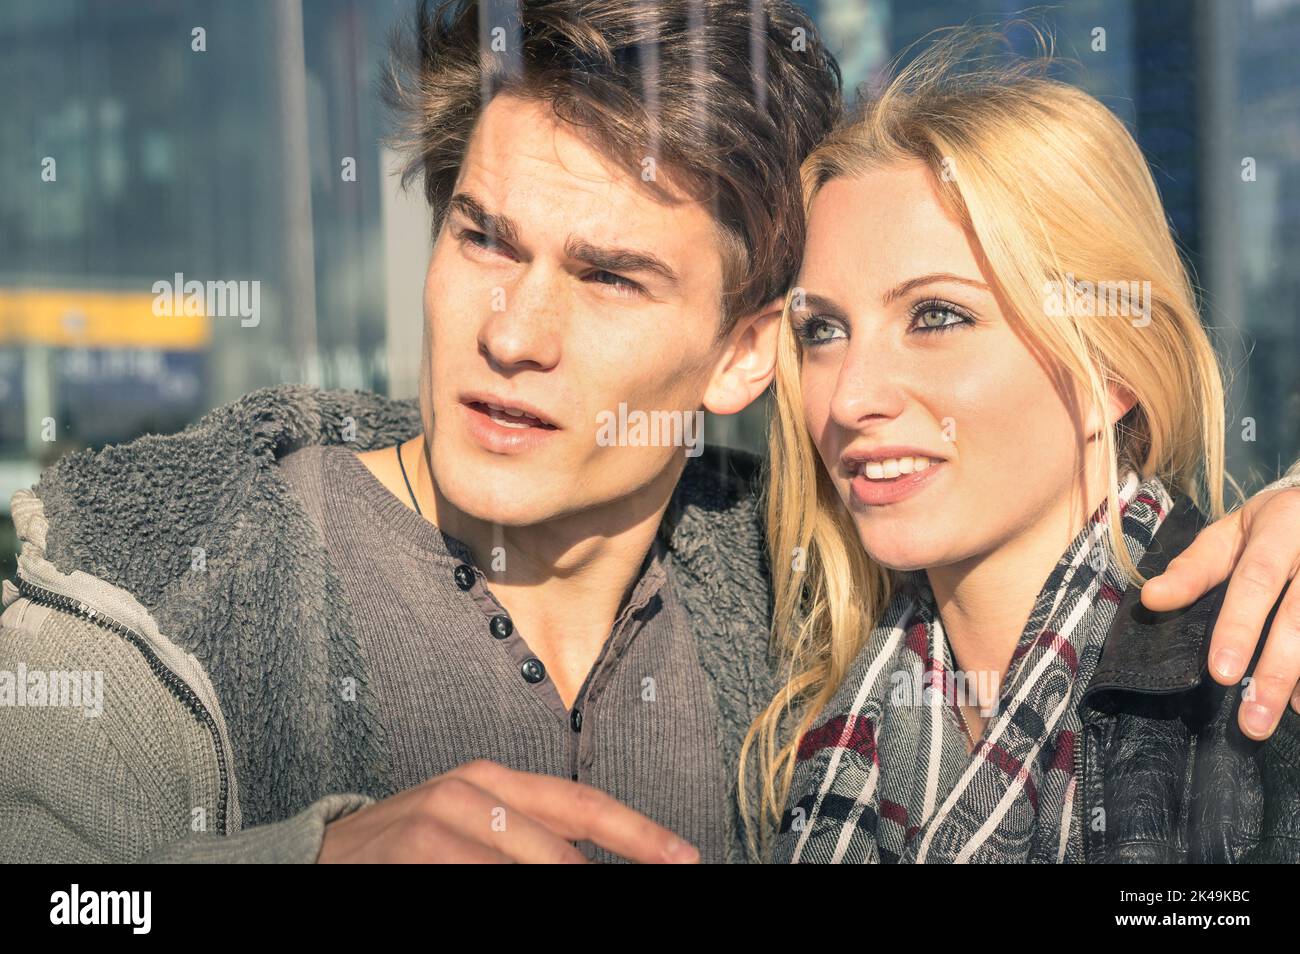 Junge Liebespaare hinter Glasreflexen - schöner Mann und schöne Frau, die etwas herumgucken - Beginn einer Liebesgeschichte über einen Jahrgang Stockfoto